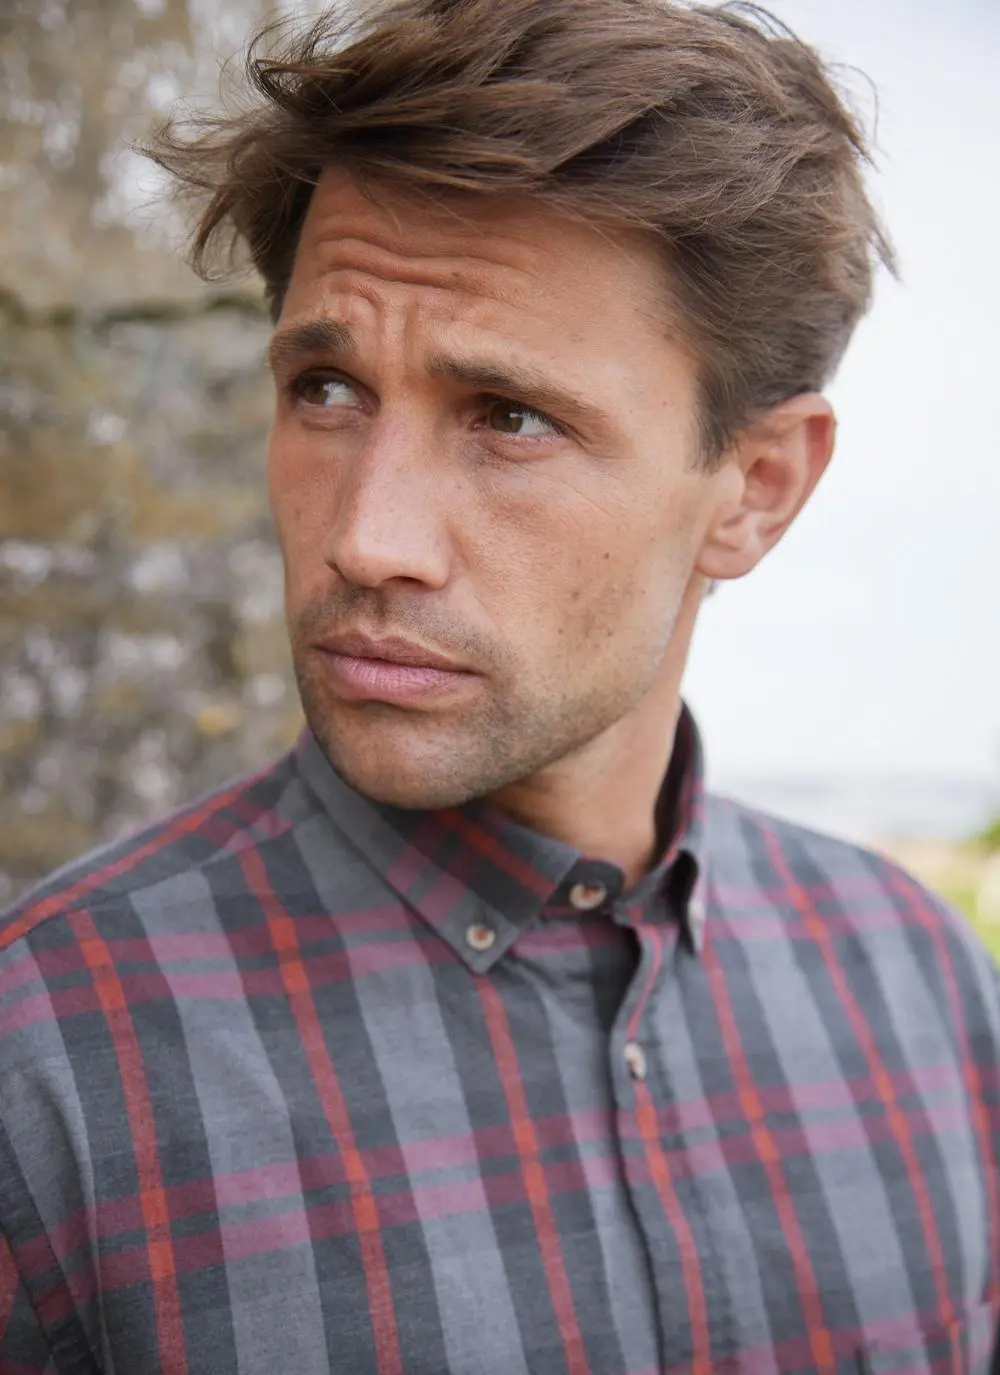 Man wearing a check shirt, close up